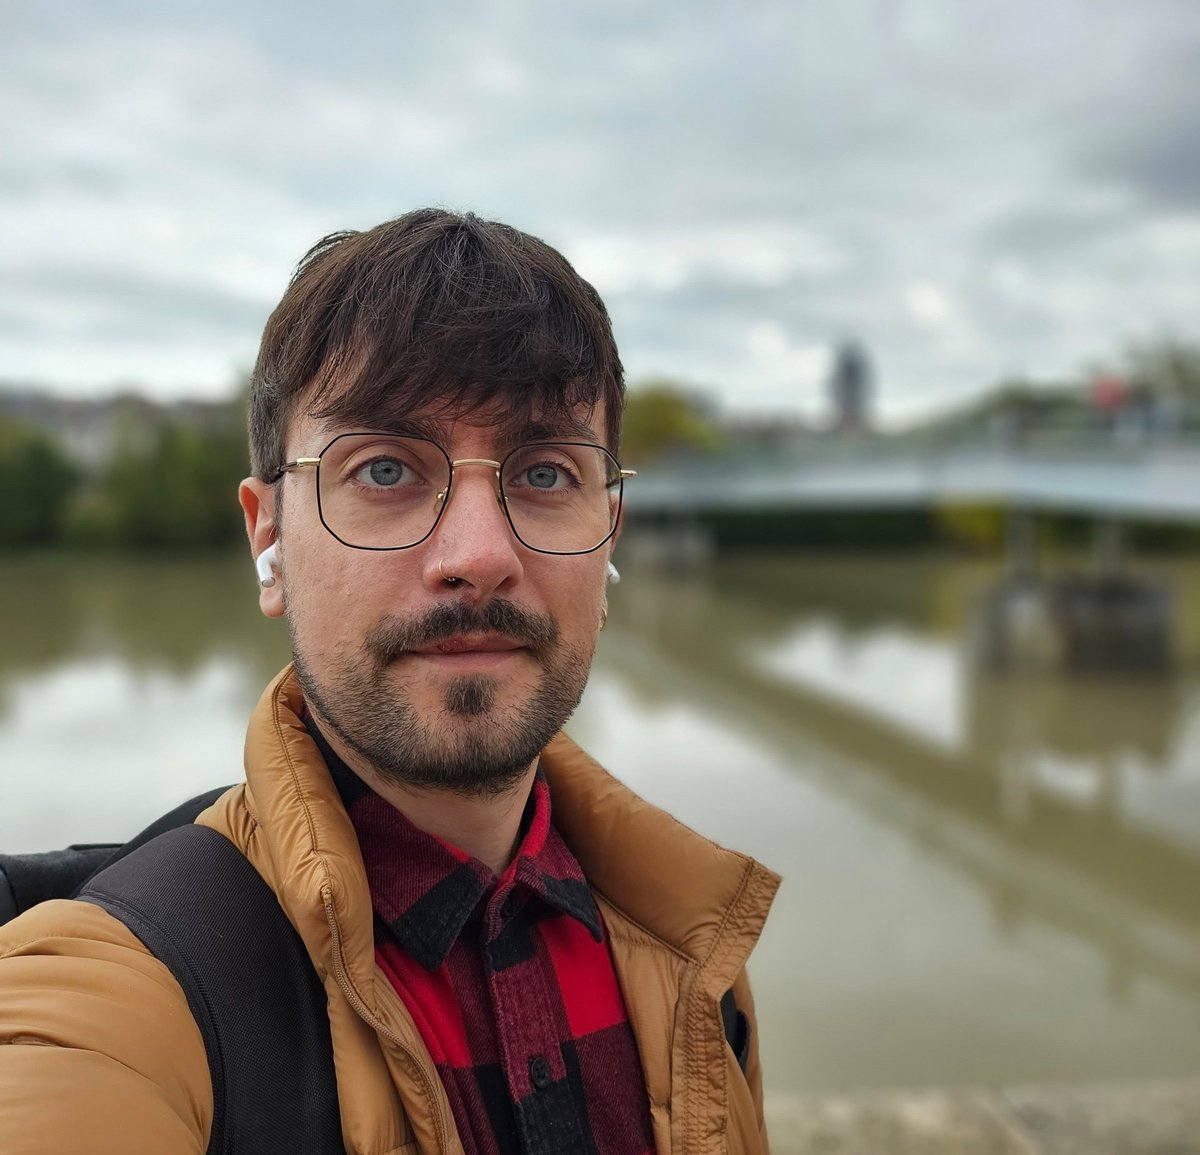 Portrait avec le grand-angle / Portrait selfie © Pierre Crochart pour Clubic